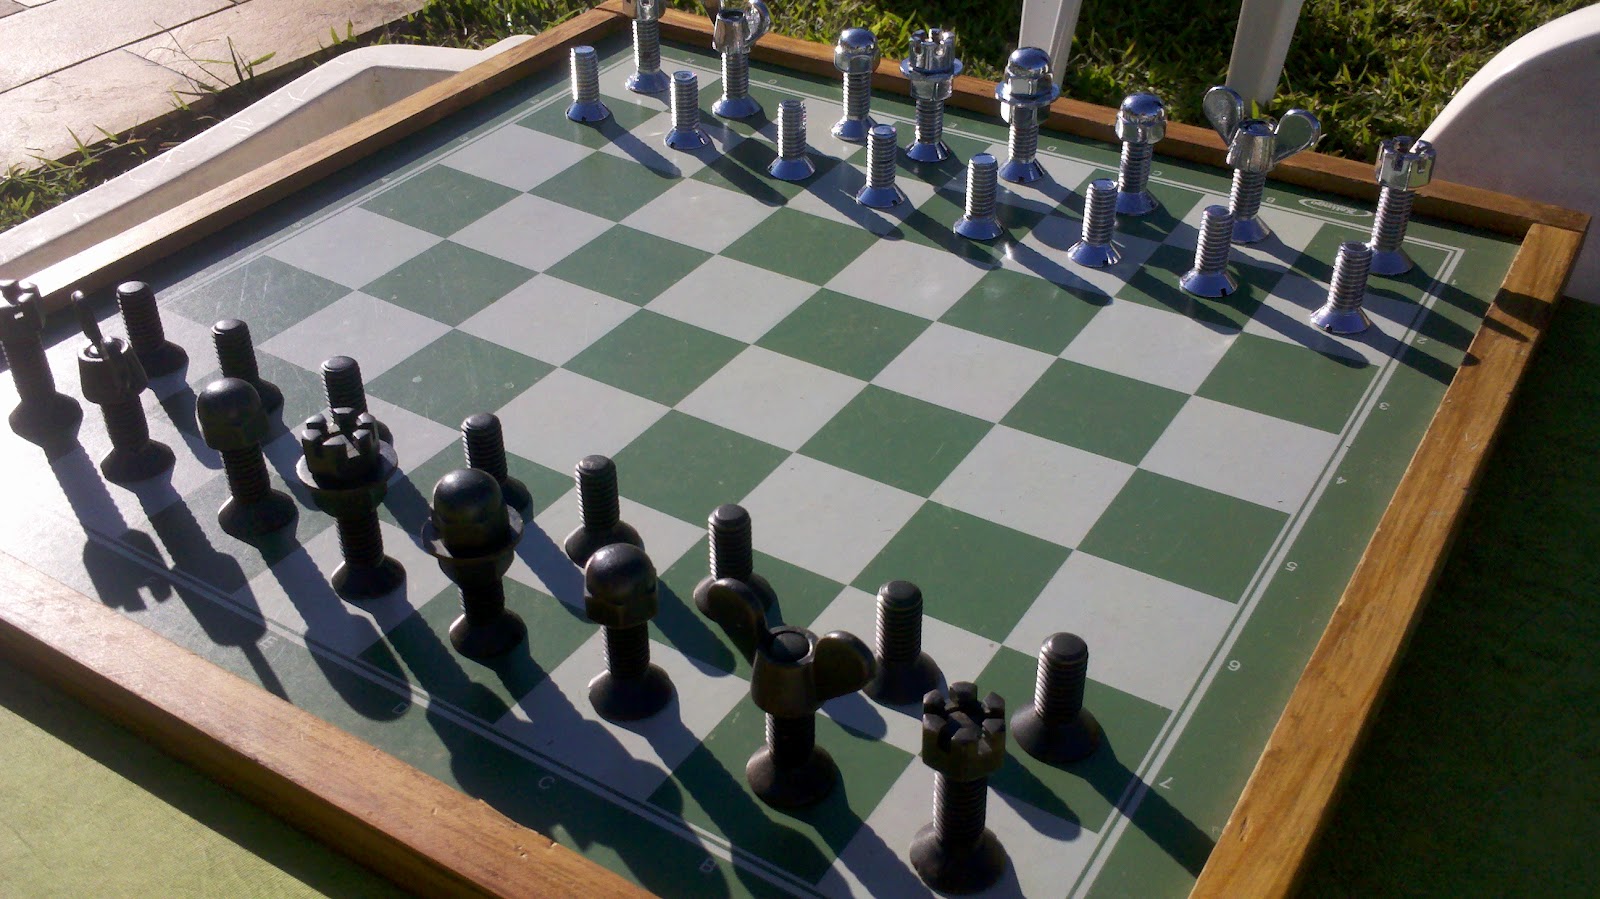 Em jogo 'pantaneiro' peças de xadrez têm formato de capivara - PP